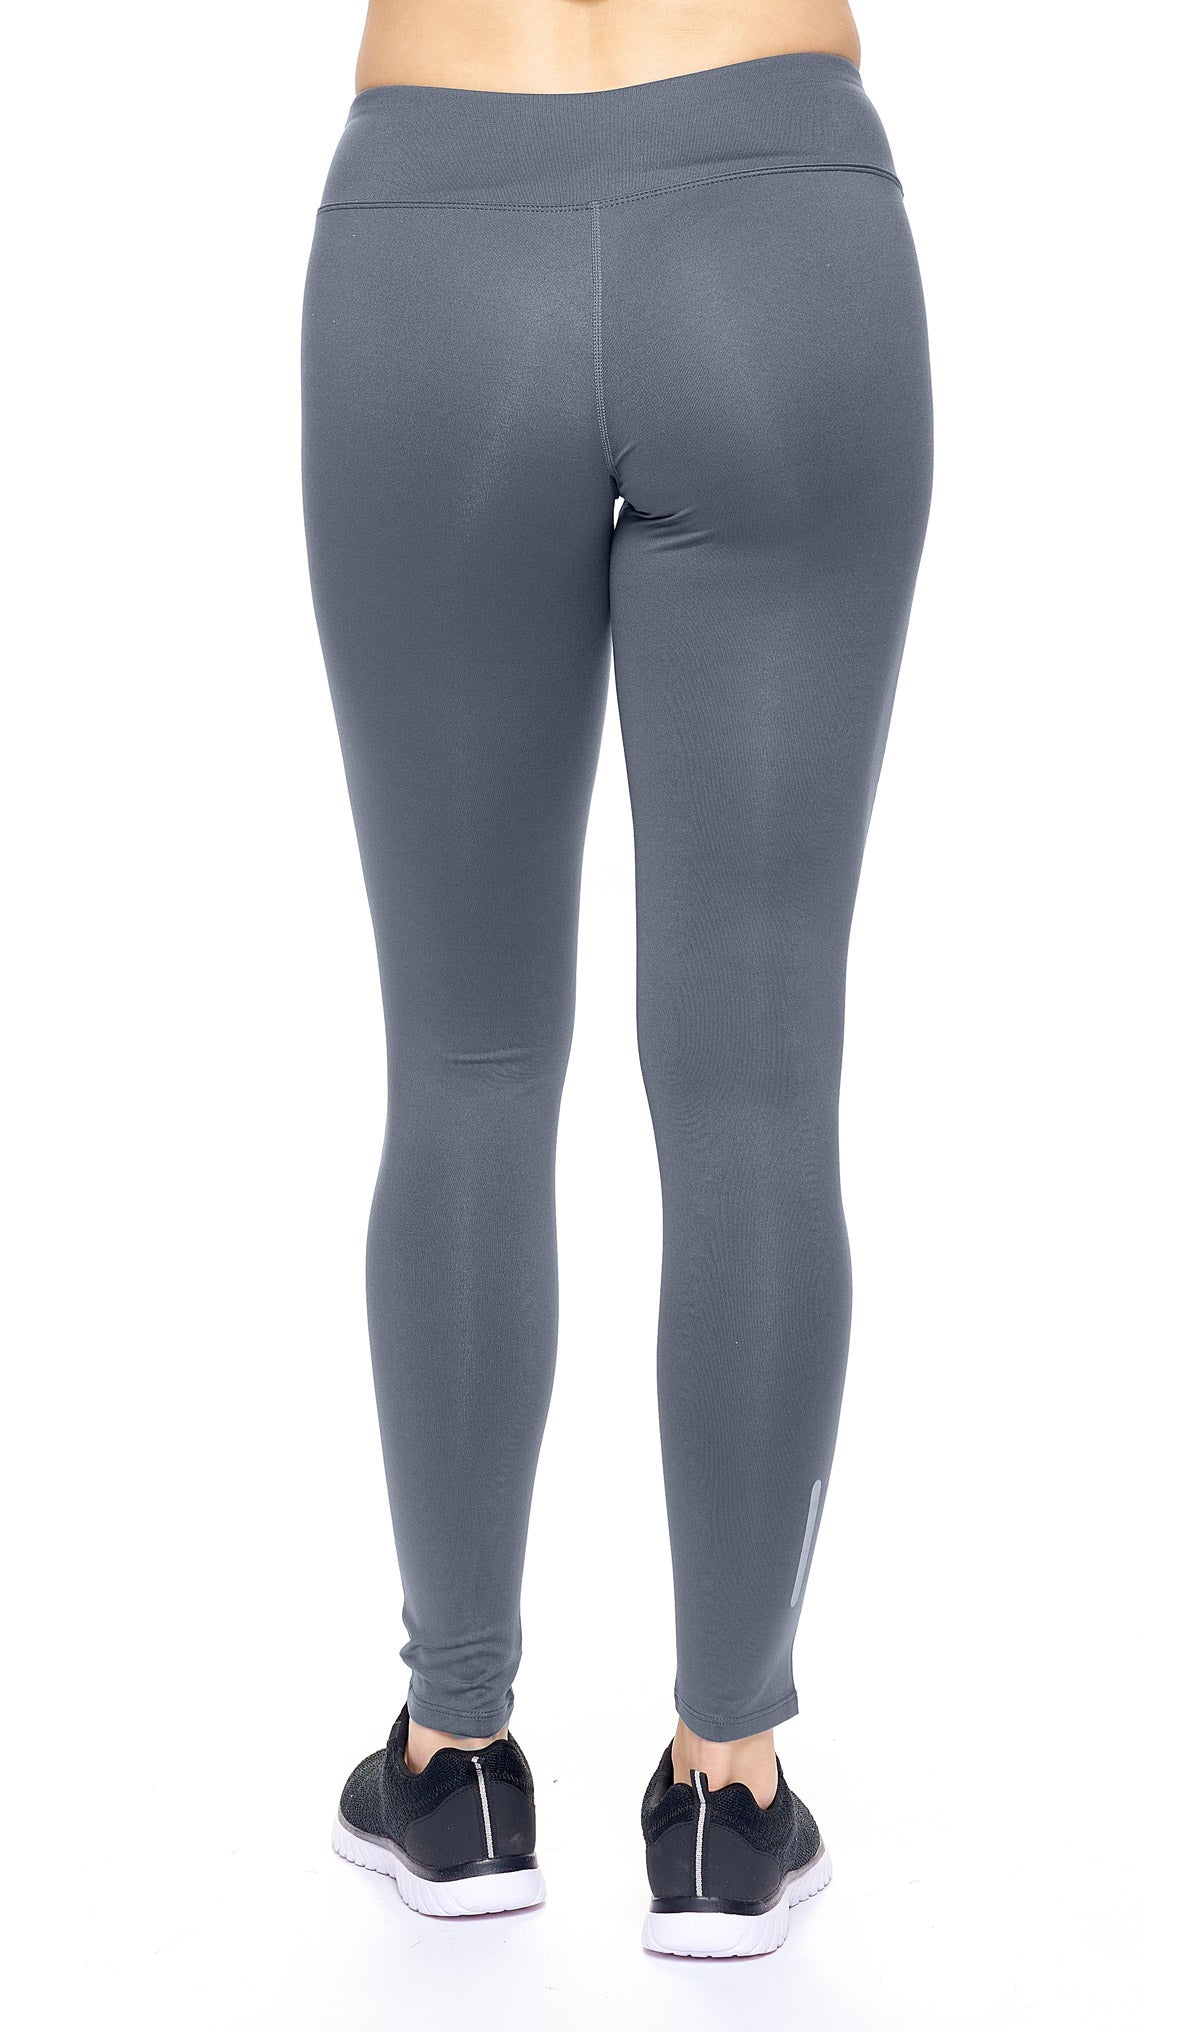 Expert Brand Wholesale Mid-Rise Full Length Leggings in Graphite Image 4#graphite